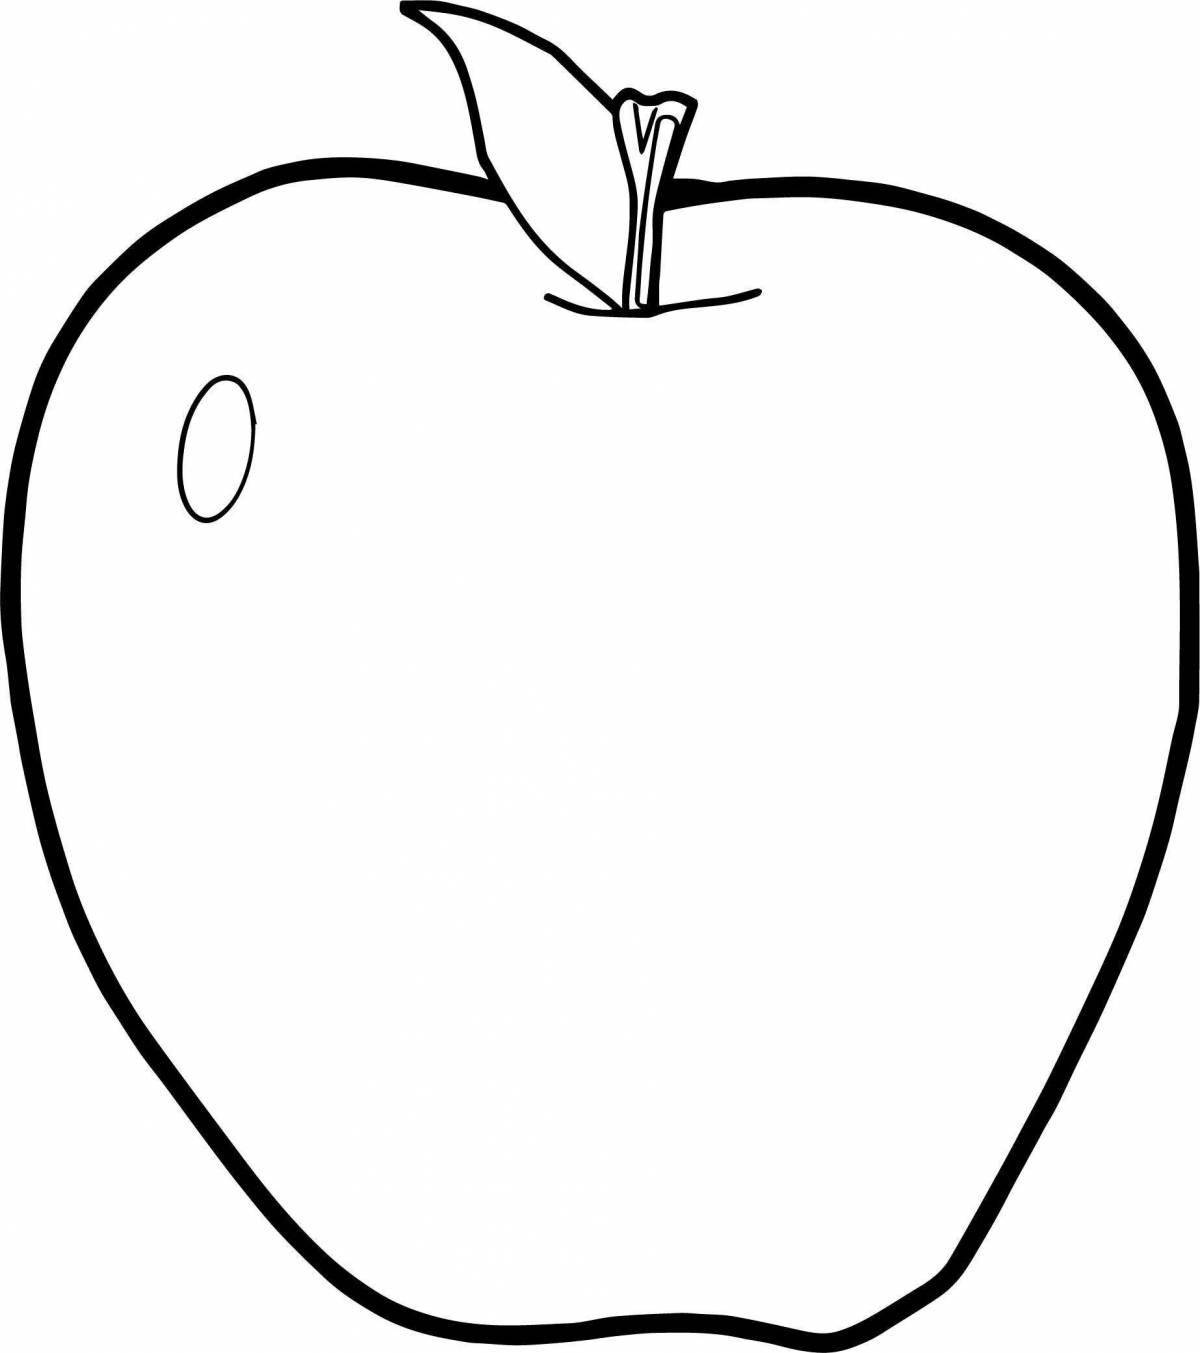 Веселая раскраска с рисунком яблока